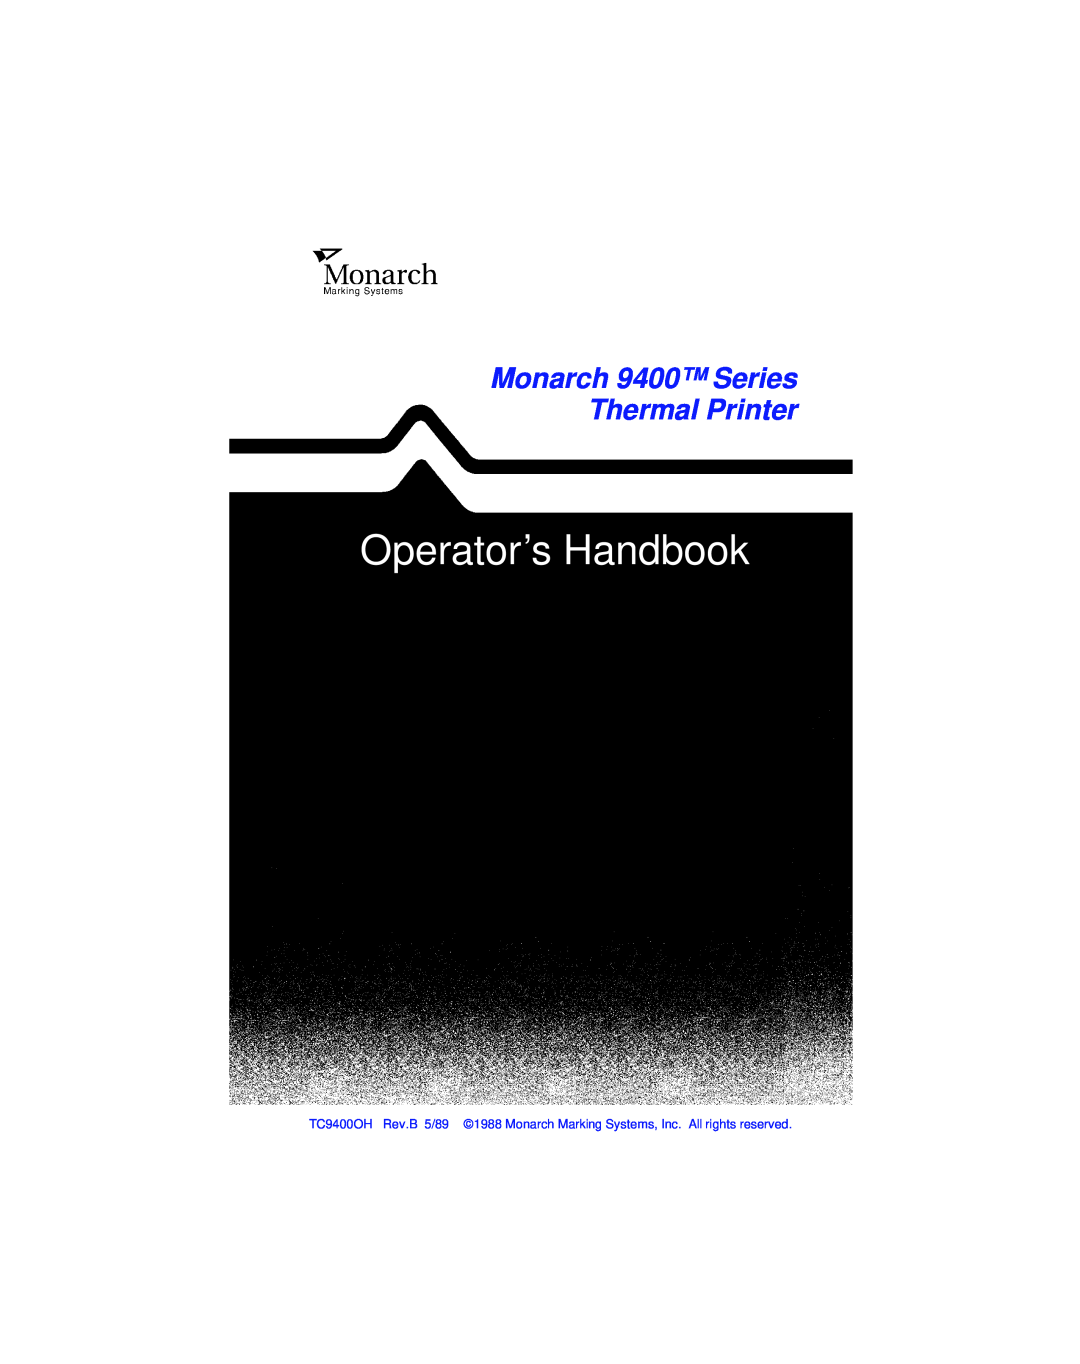 Paxar manual Operators Handbook, Monarch 9400 Series Thermal Printer 